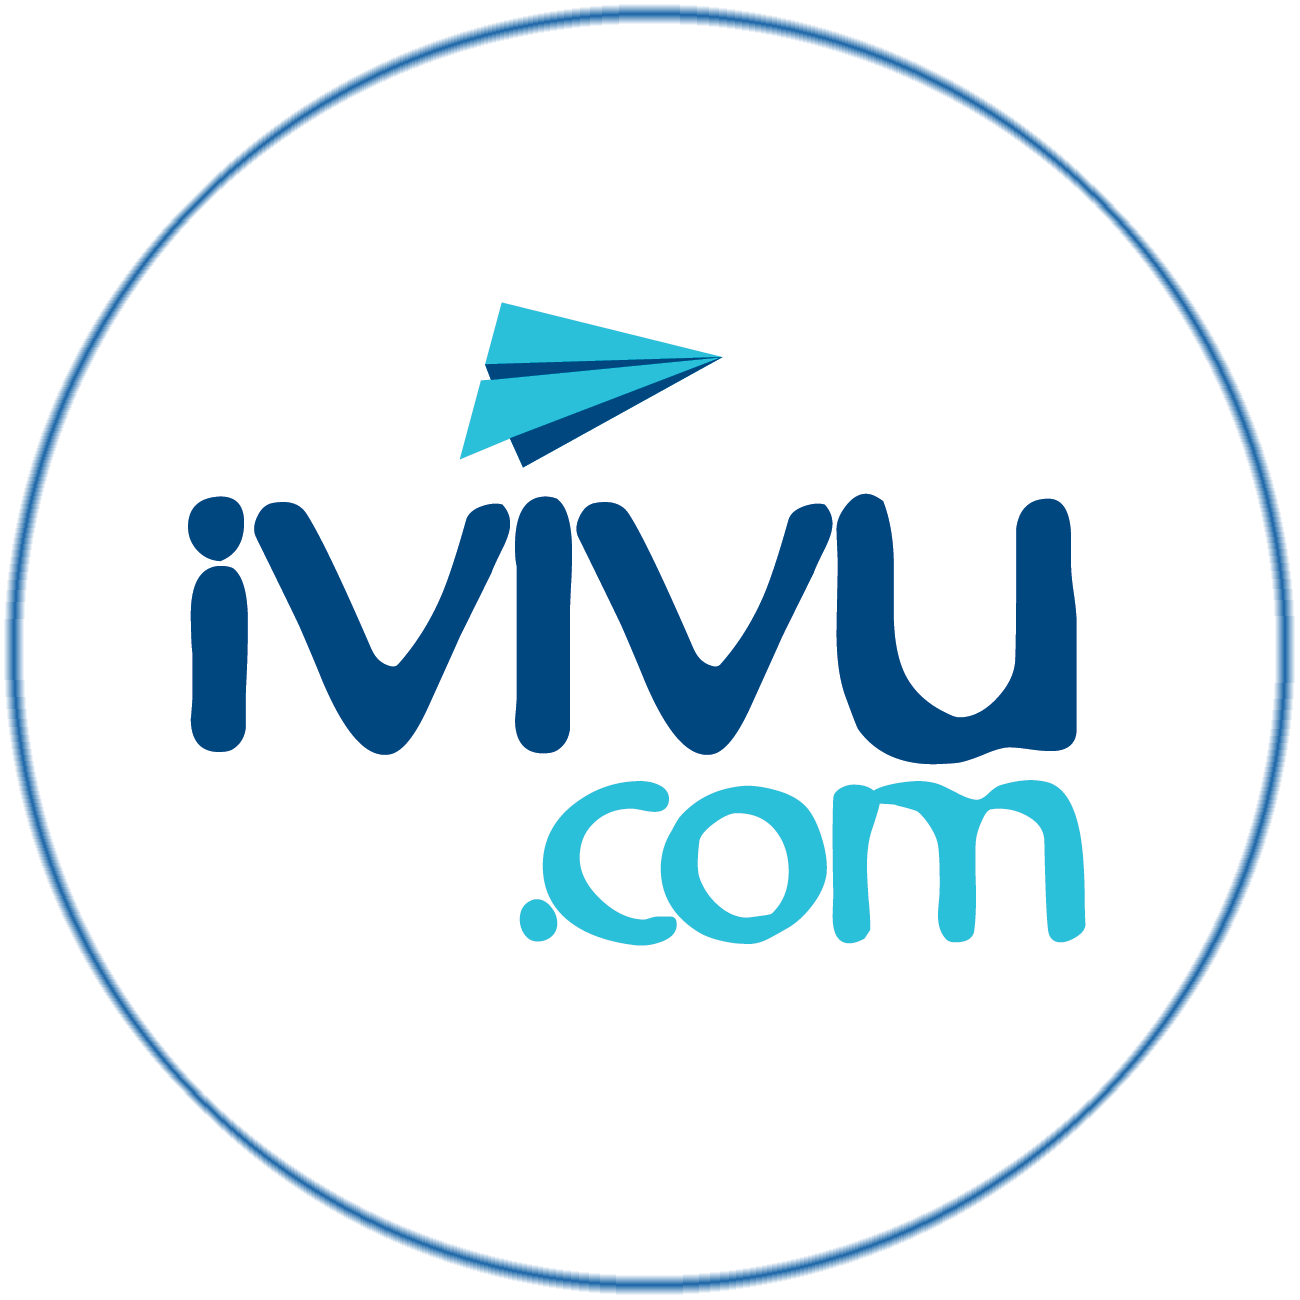 iVIVU.com